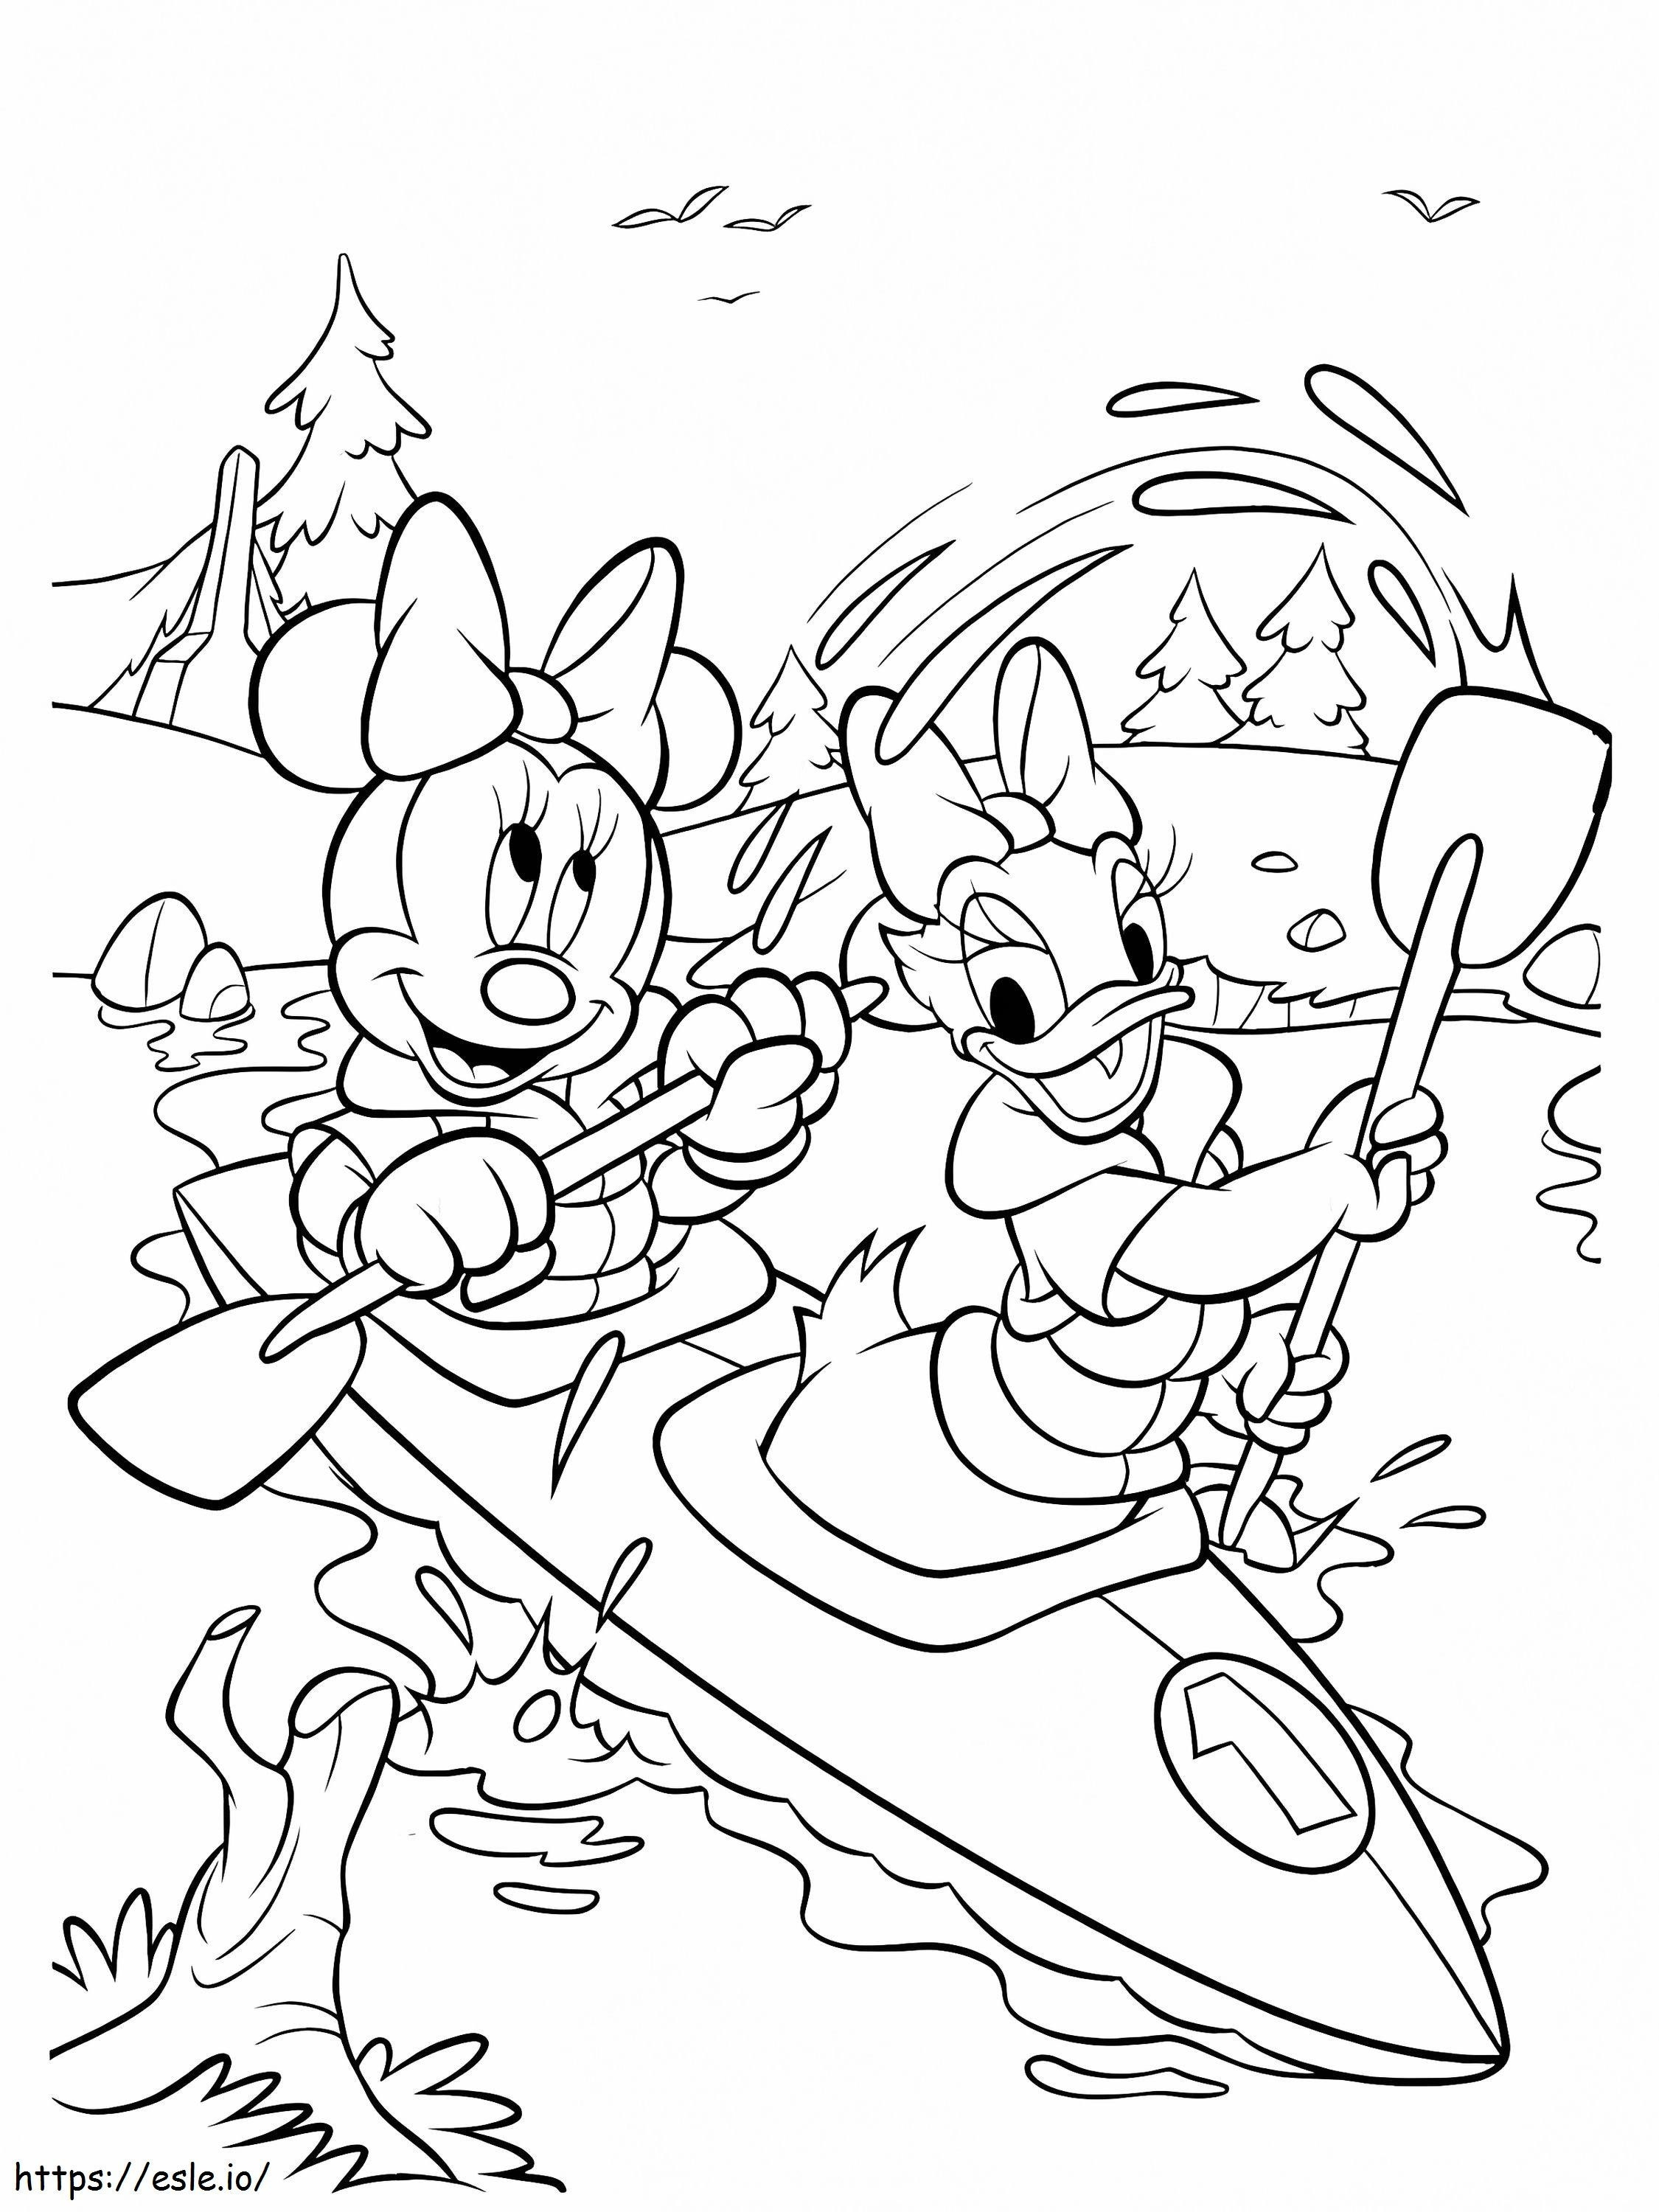 Minnie Mouse e Paperina che remano su una barca da colorare